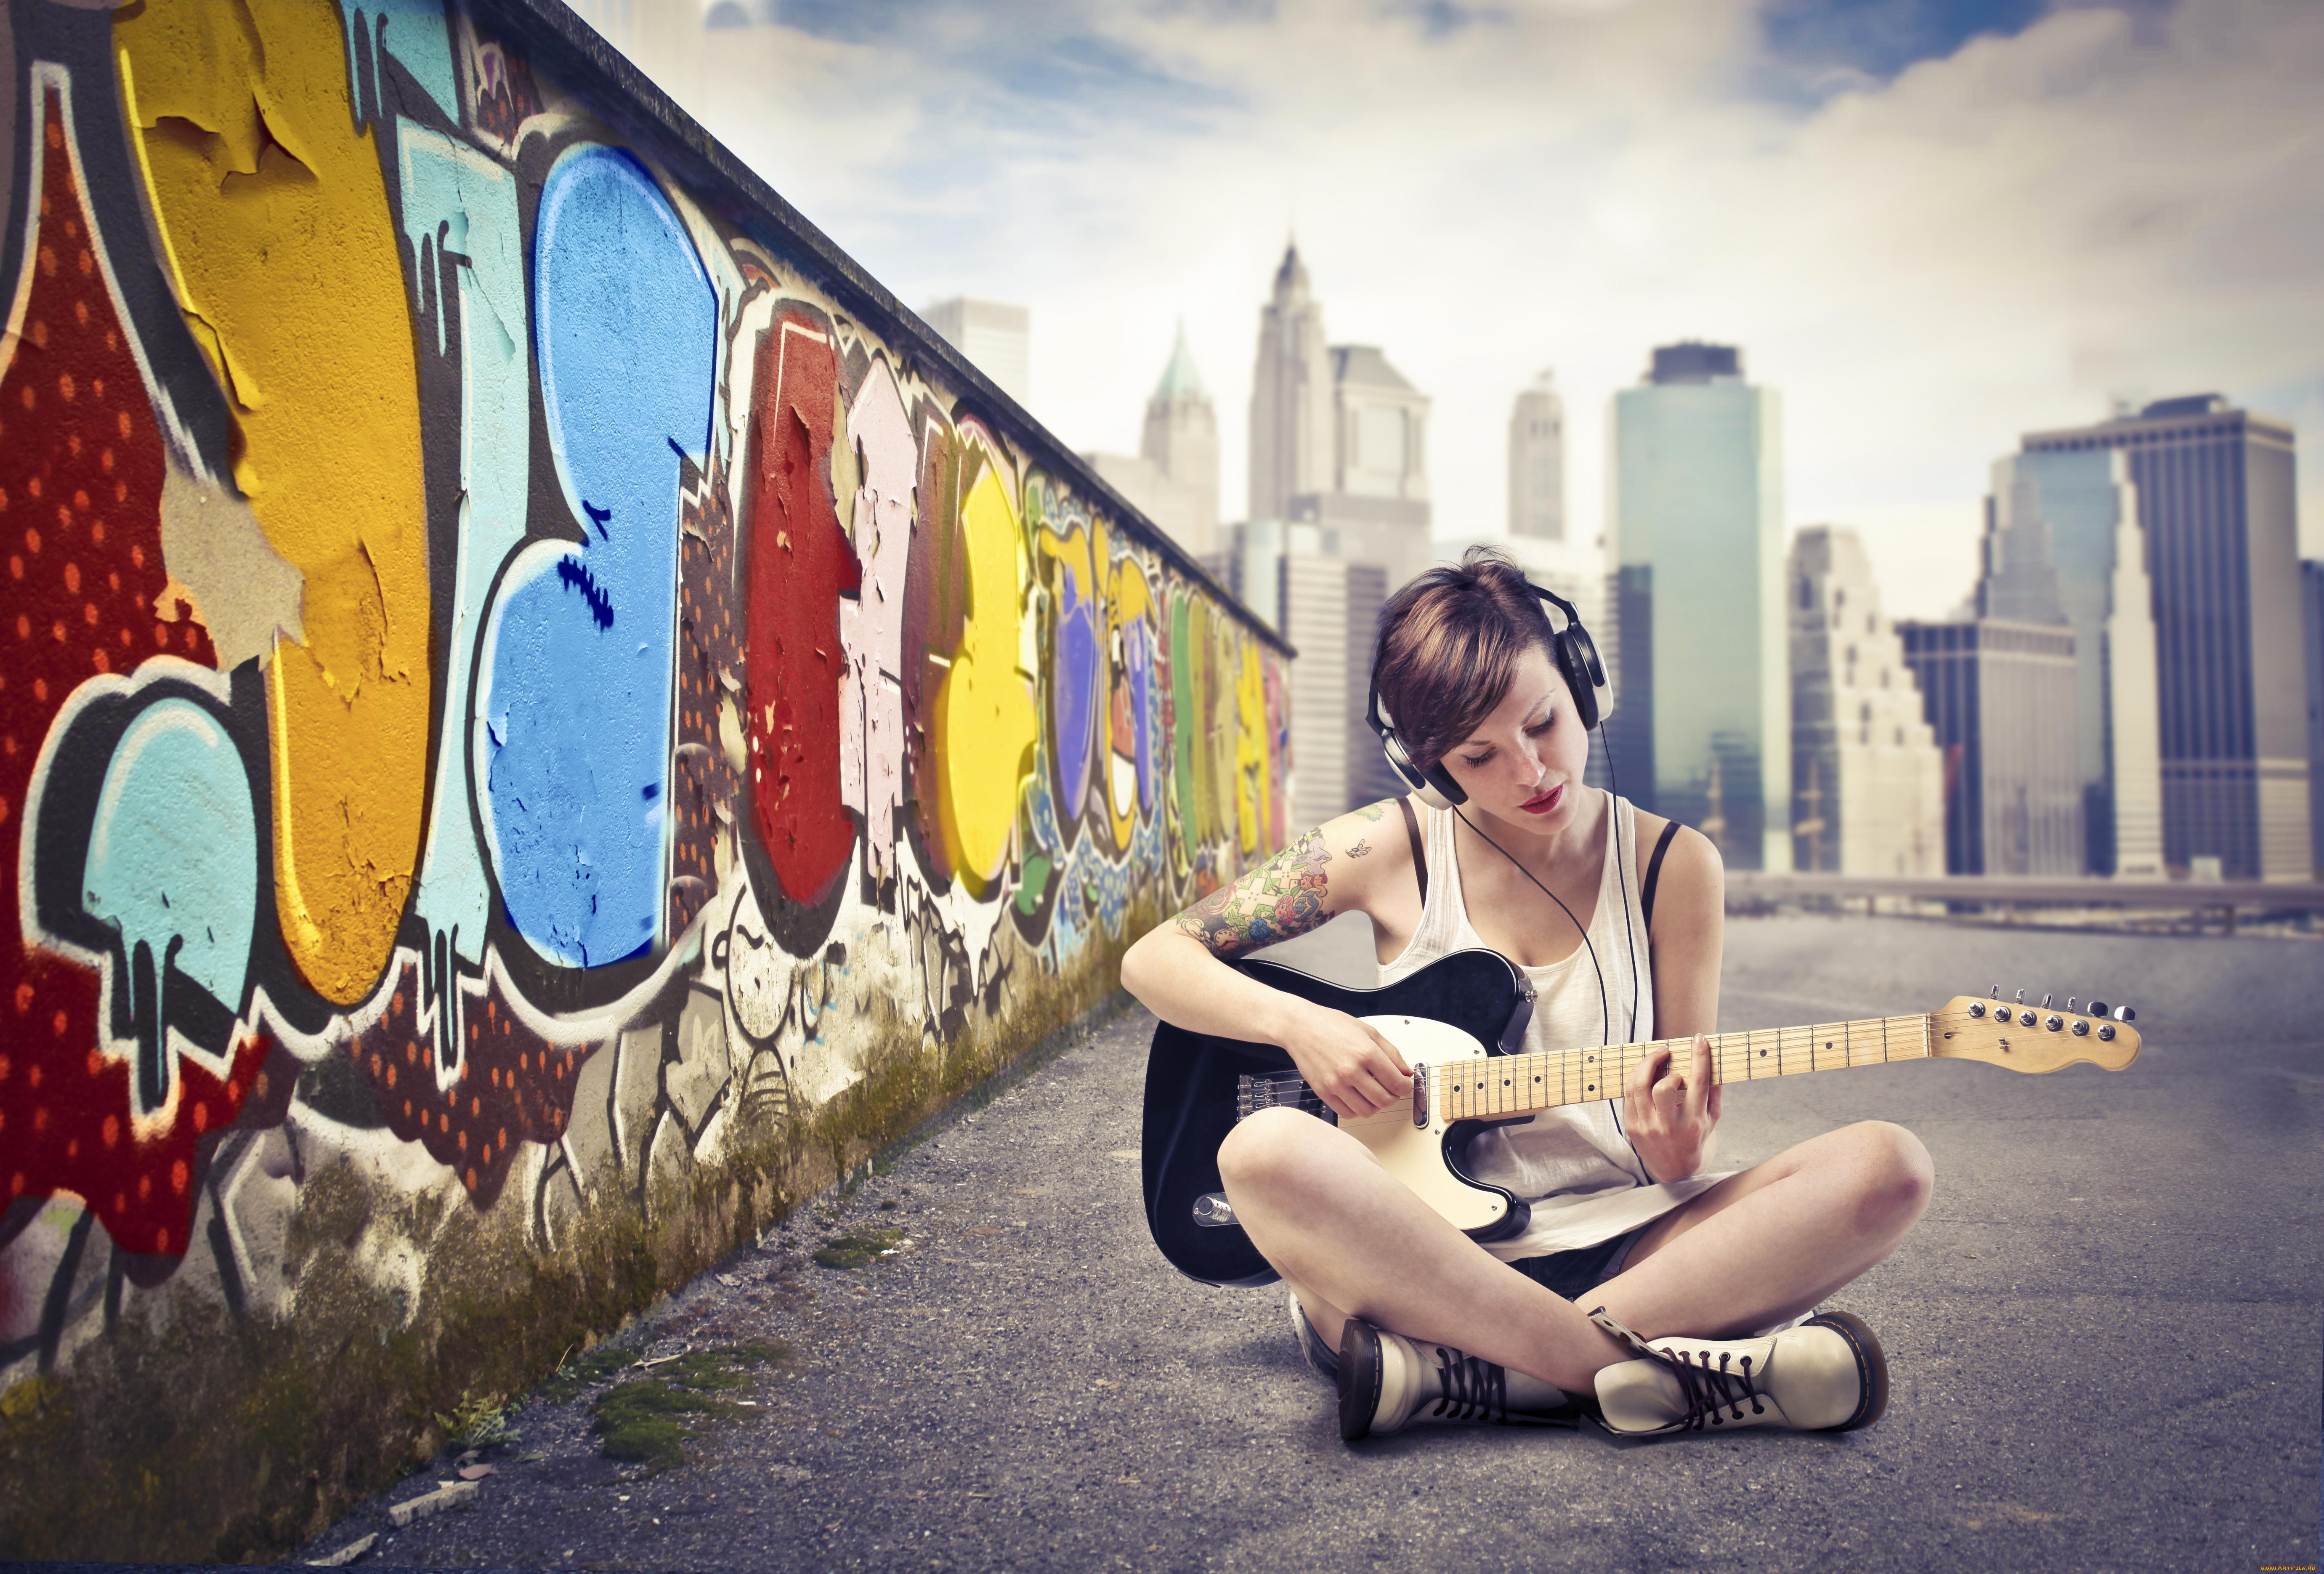 Поп стайл песня. Обои молодежные. Фотосессия с граффити. Граффити девушка. Девушка сидит с гитарой.